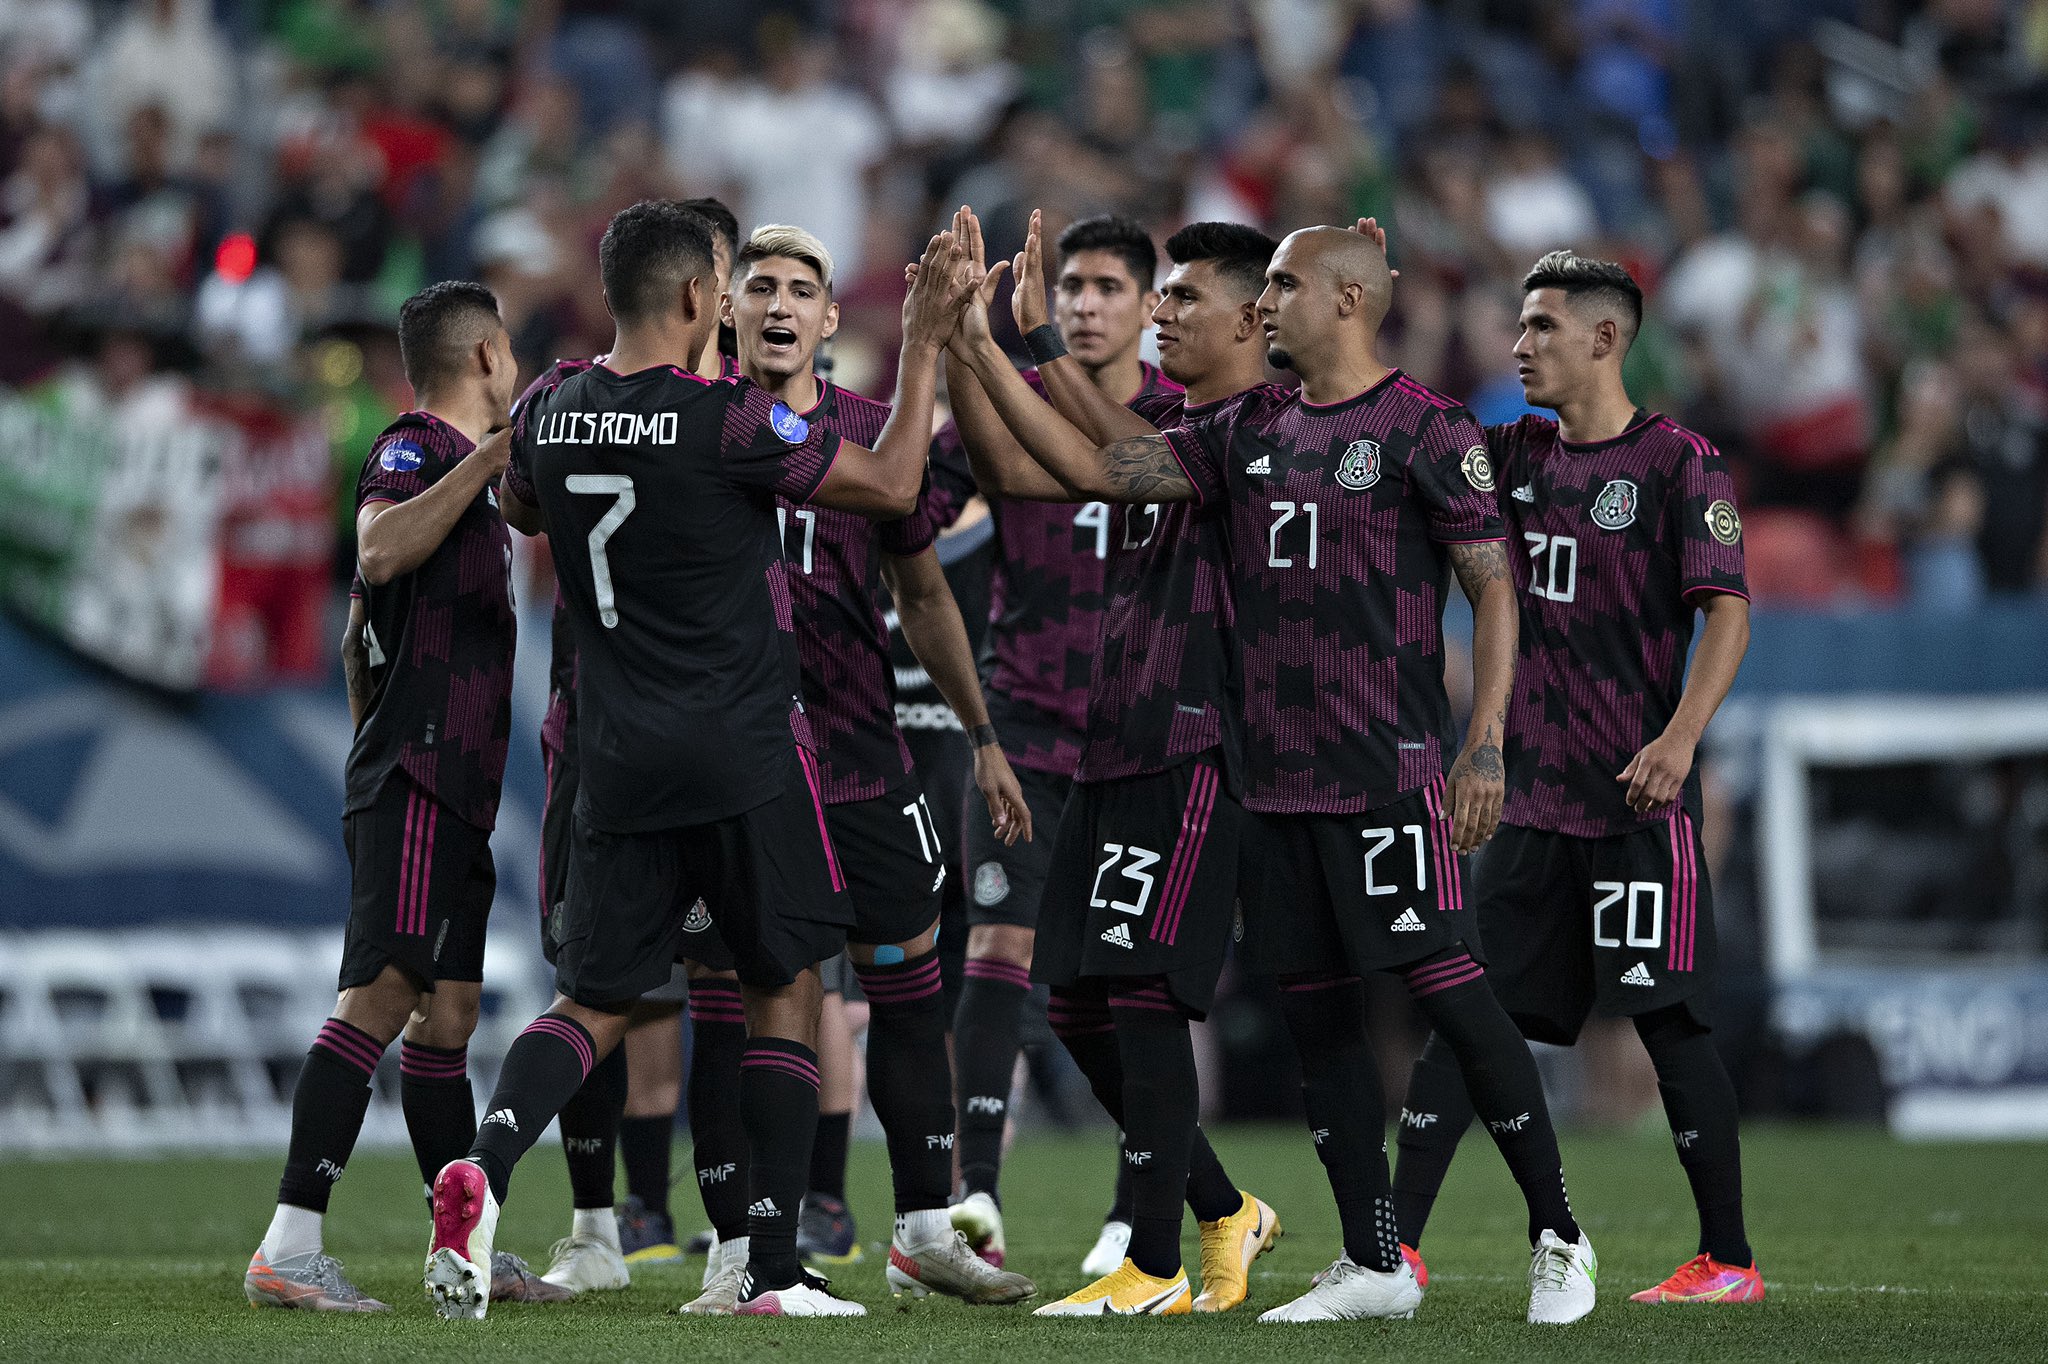 Gold Cup Recap: Pulido and Mexico edge El Salvador, finish top of Group A